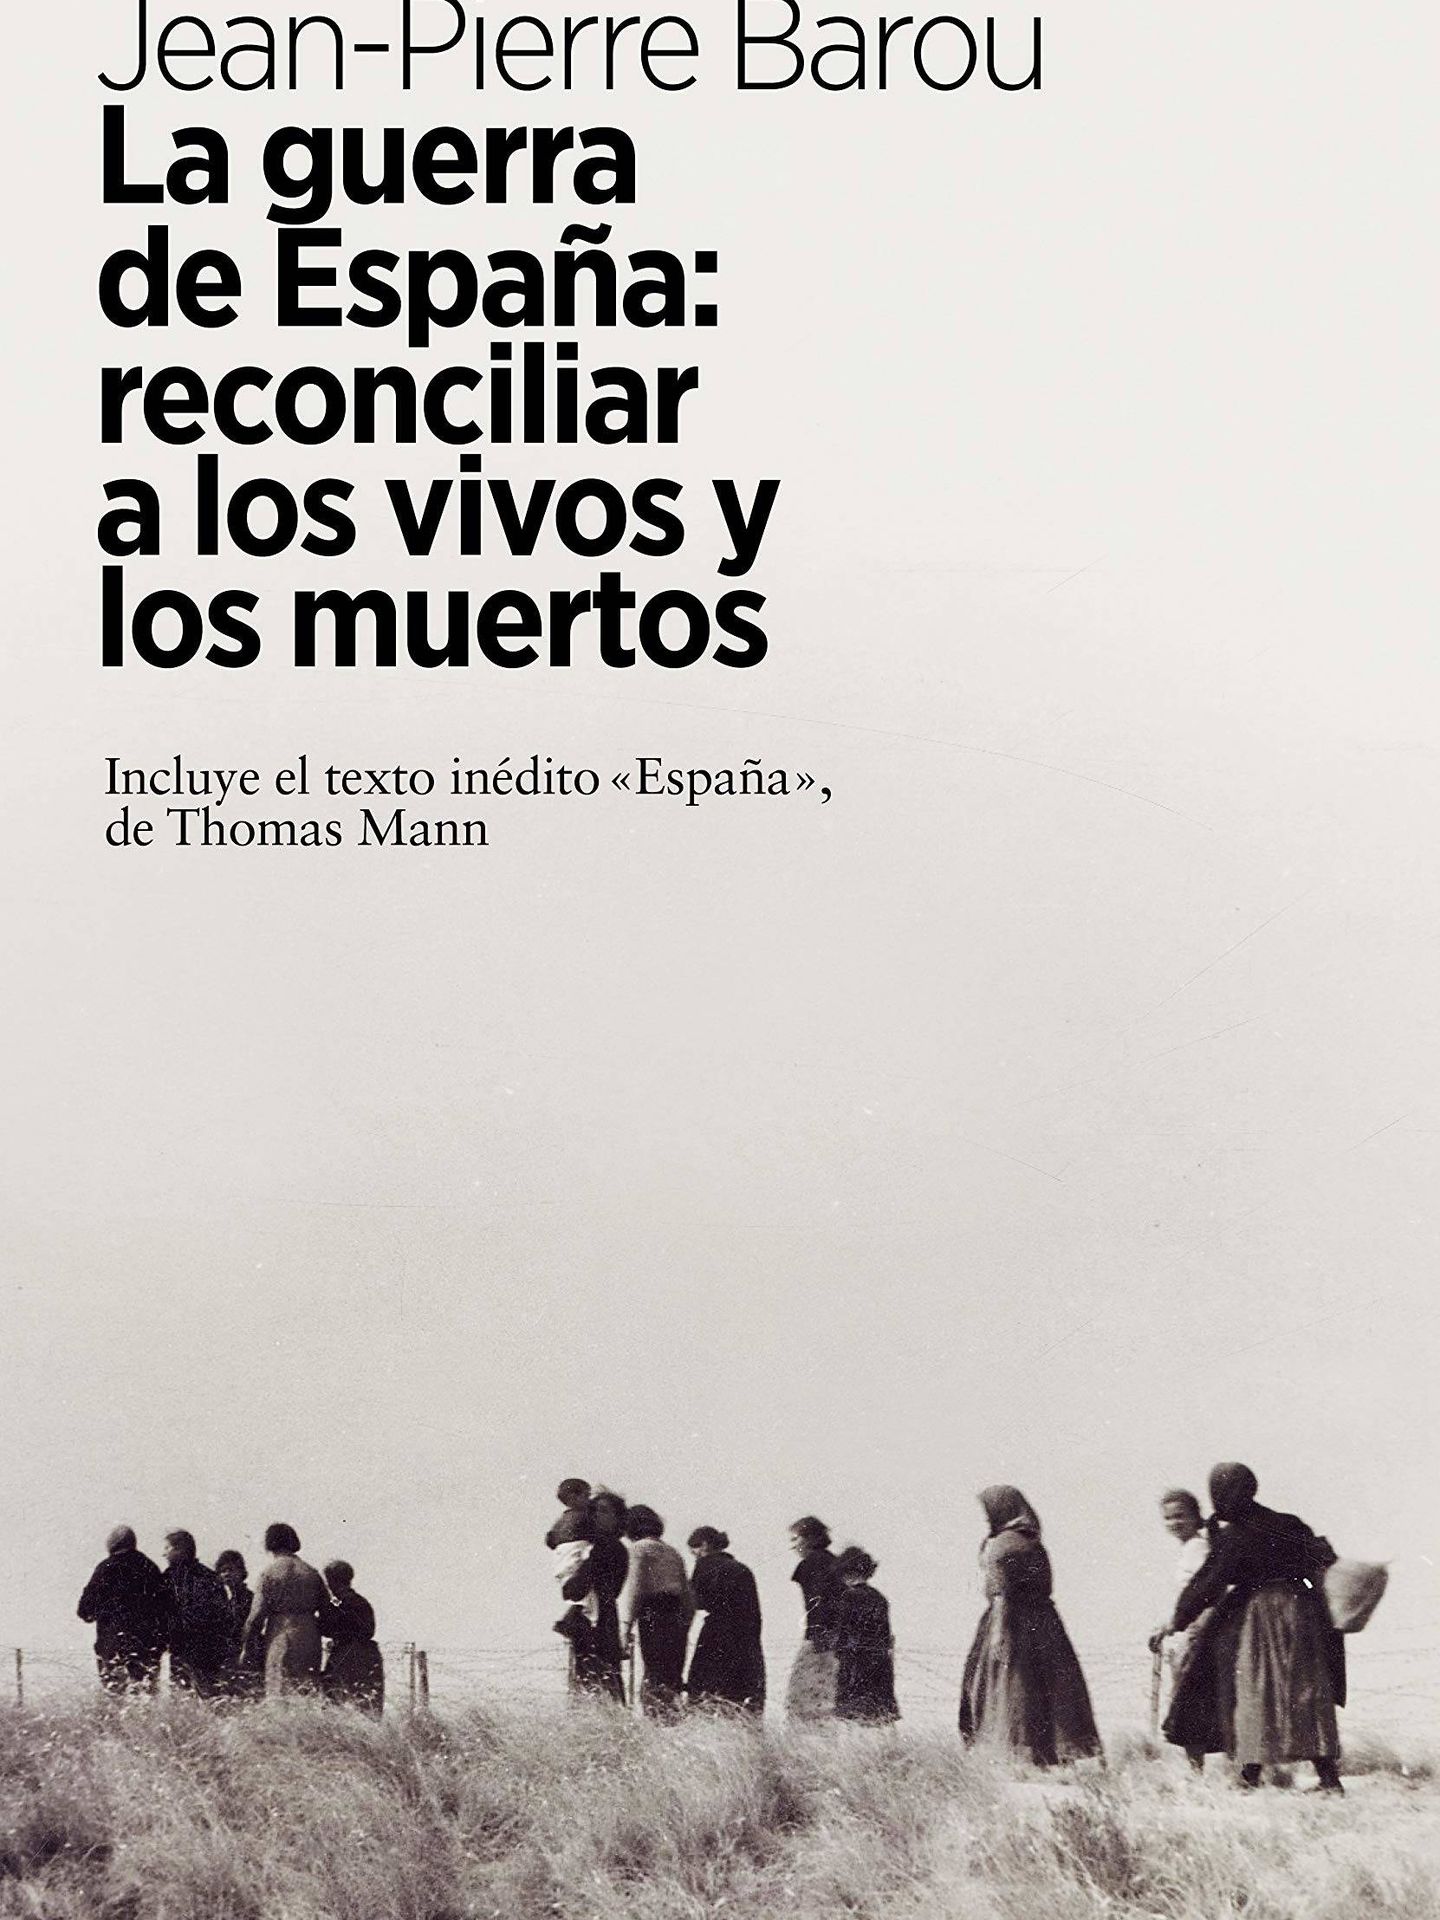 'La guerra de España' (Arpa)